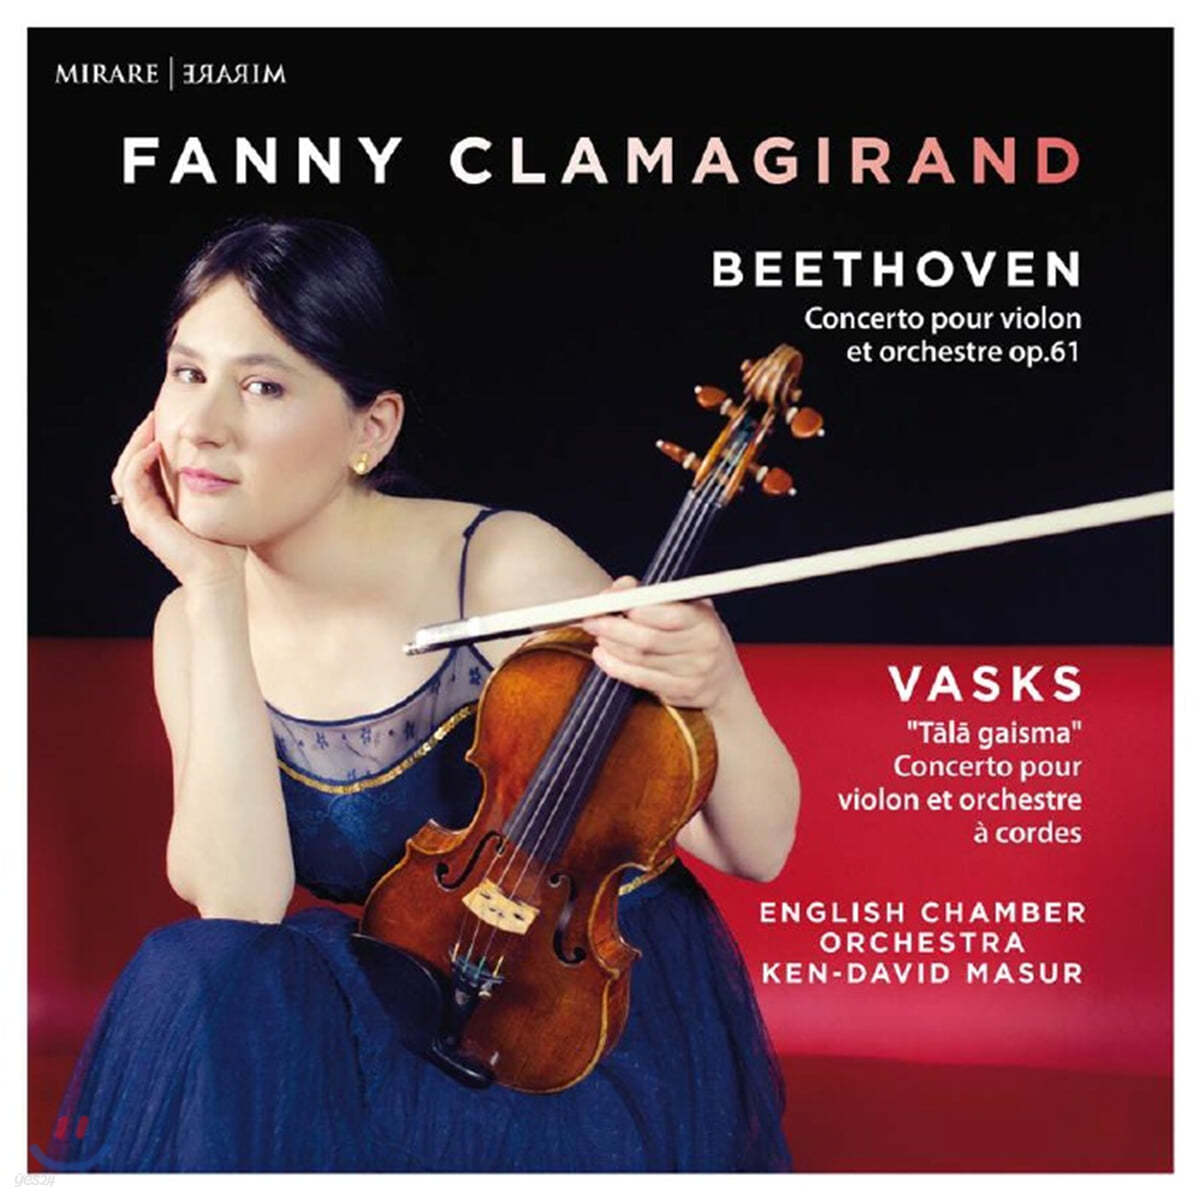 Fanny Clamagirand 베토벤: 바이올린 협주곡 / 바스크스: 머나먼 빛 (Beethoven: Violin Concerto Op. 61 / Vasks: Tala Gaisma)